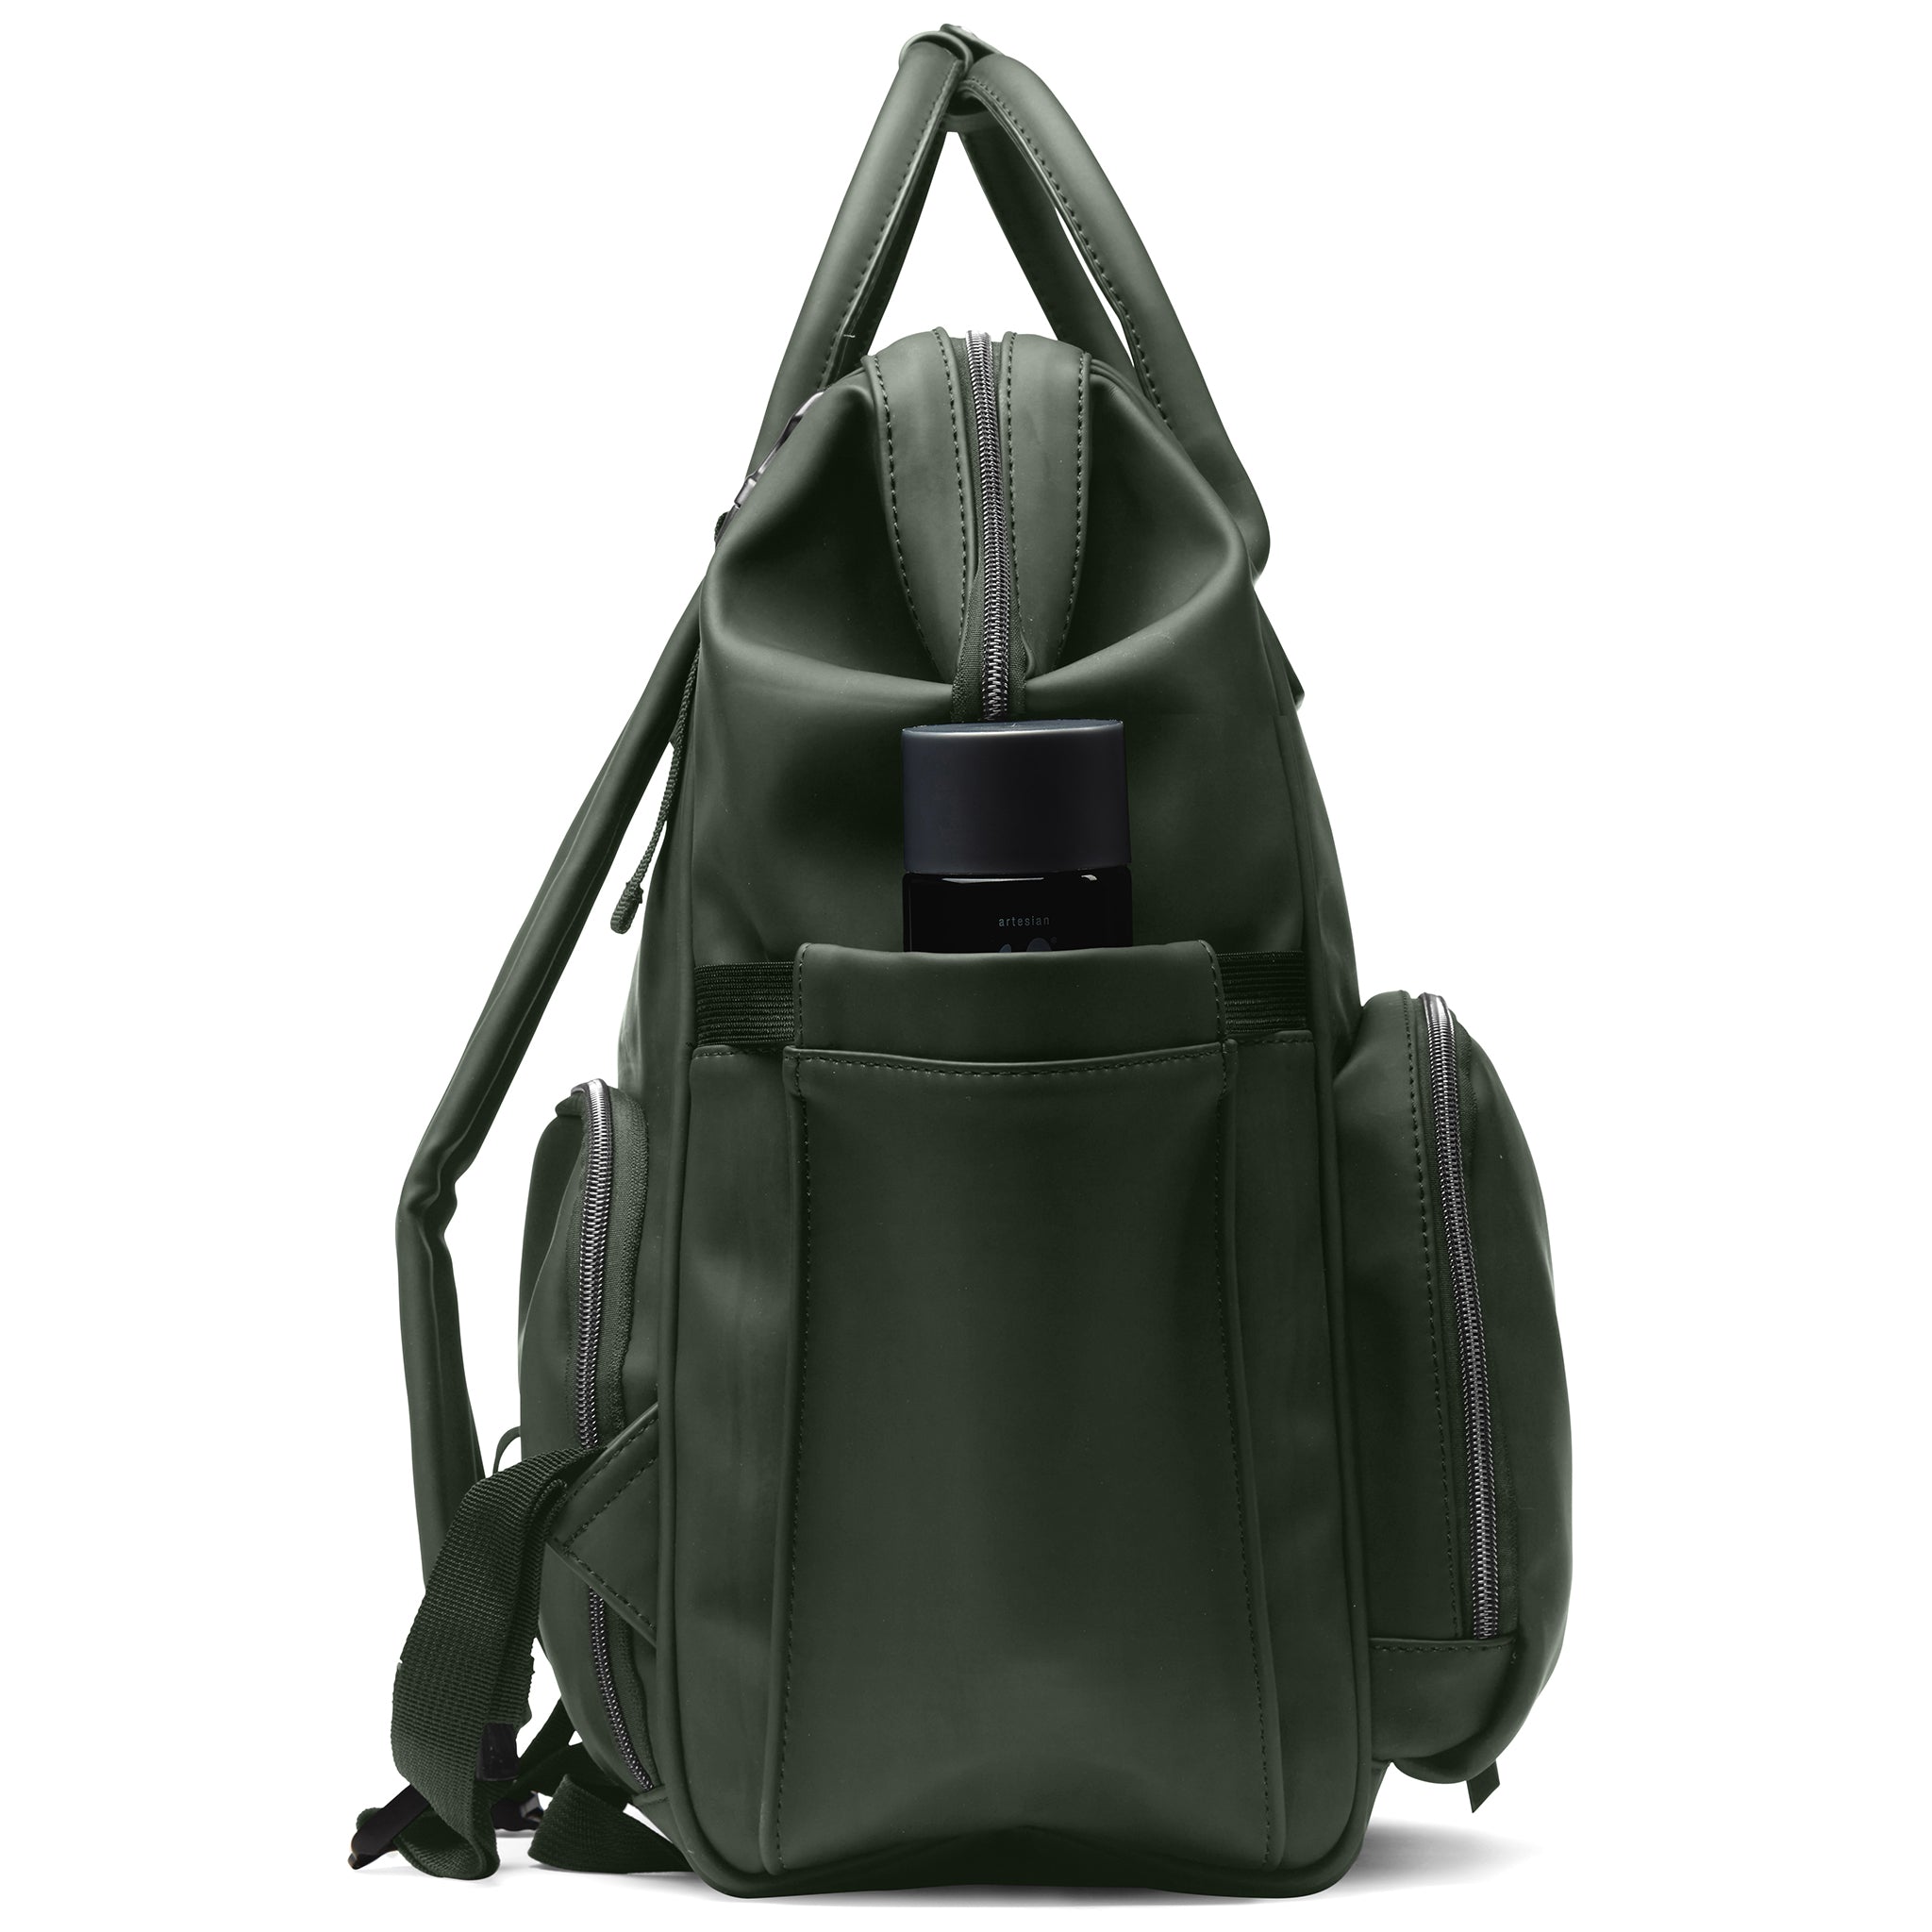 ALUXO Bags - Active X Baby Bag Olive Green